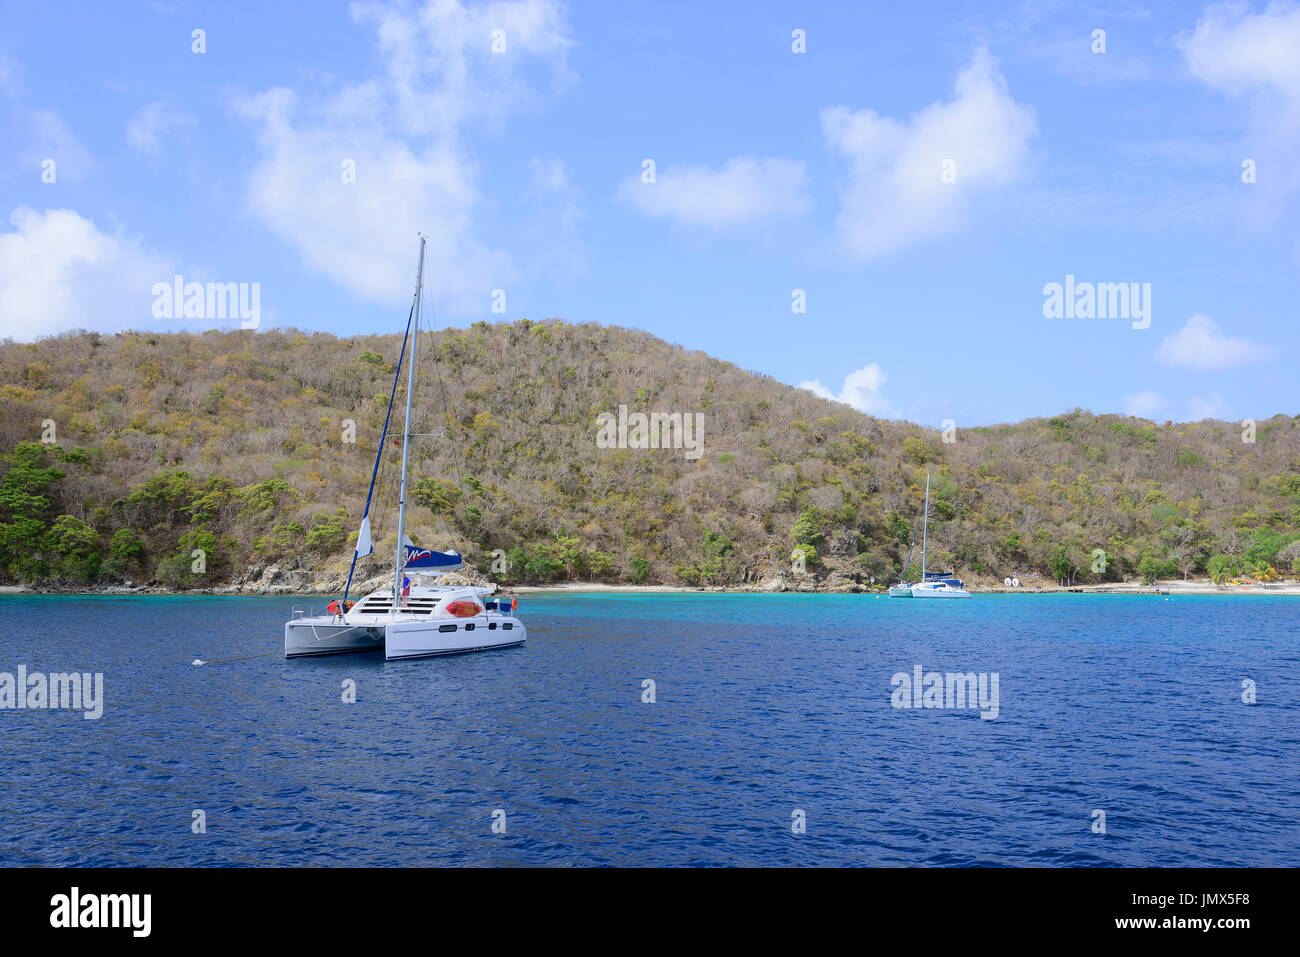 Barca a vela da Tortola Island, il Mare dei Caraibi, isola di Tortola, Isole Vergini Britanniche, Mar dei Caraibi Foto Stock